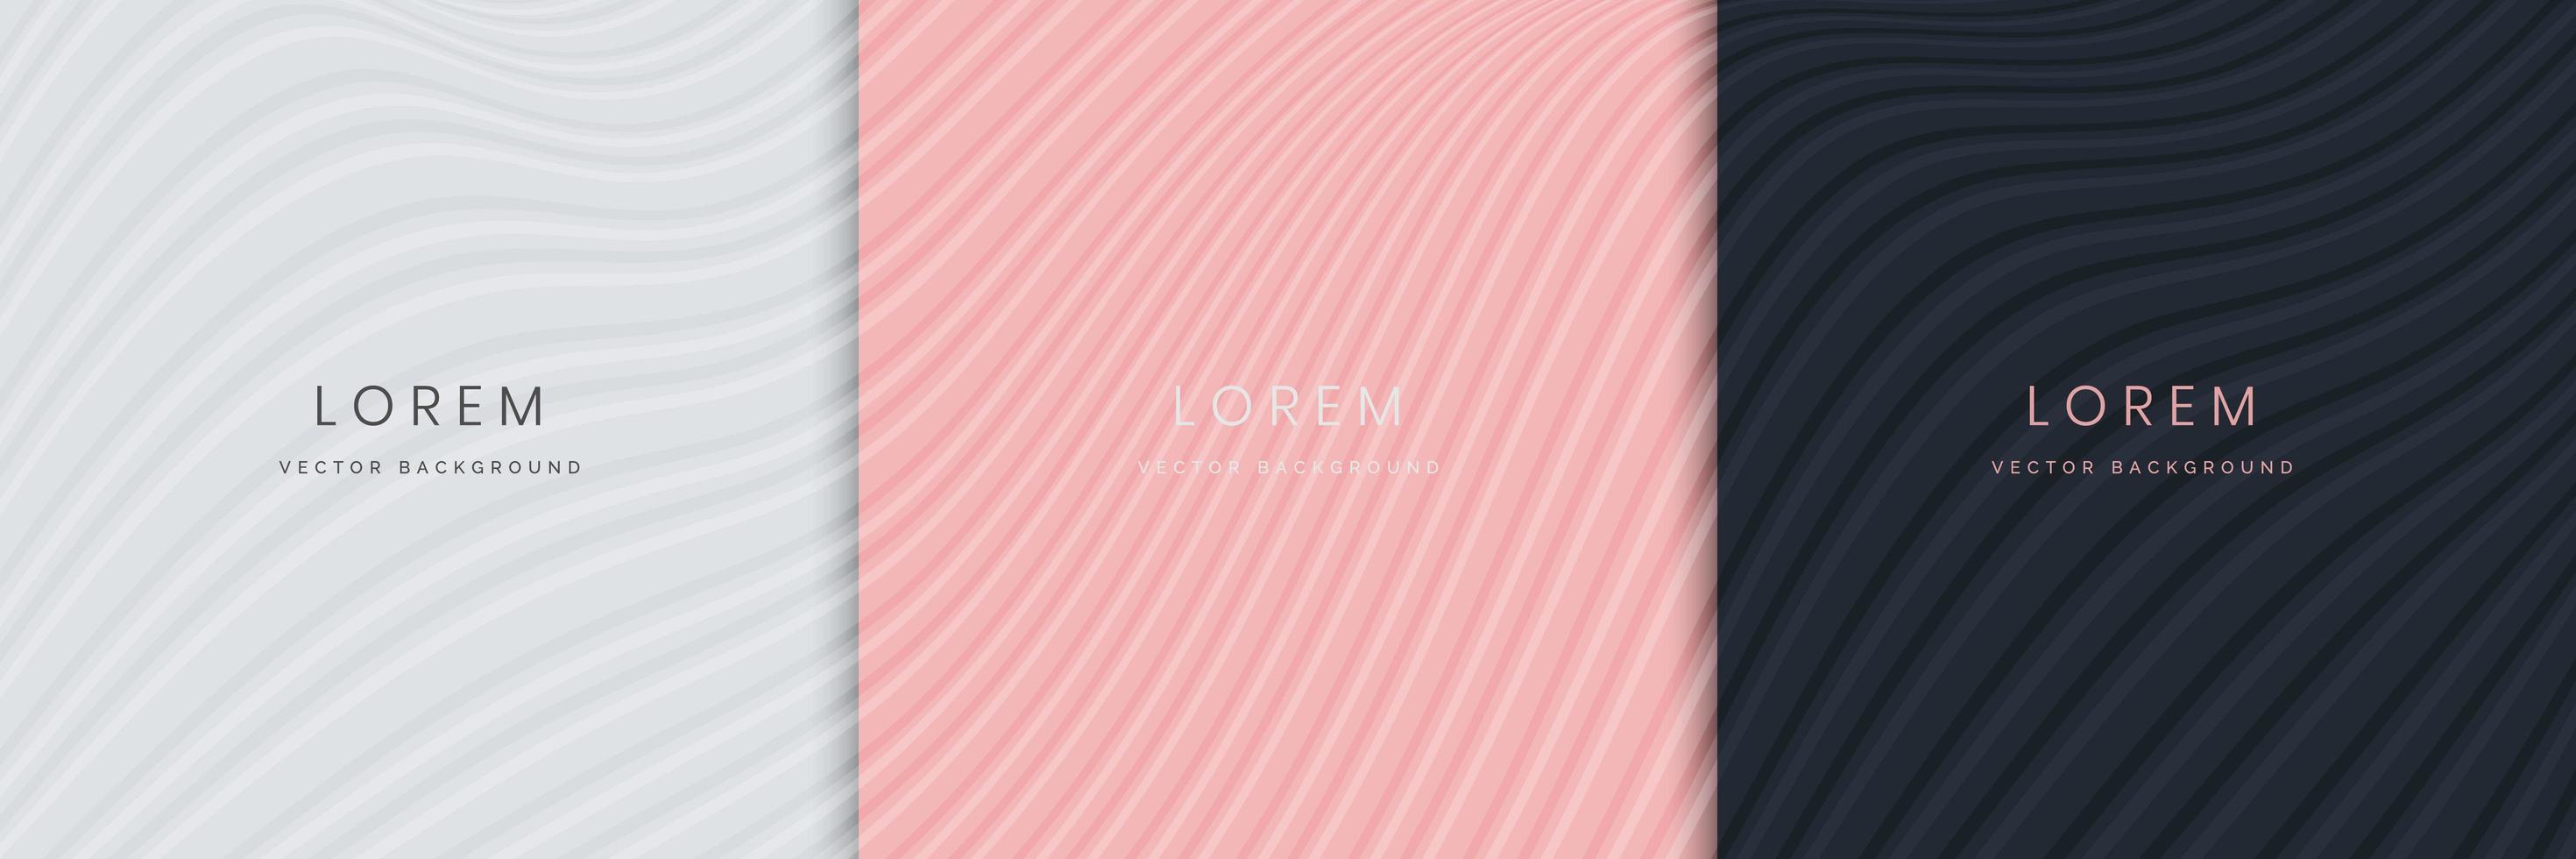 Satz abstrakter weißer, rosafarbener, dunkelblauer, eleganter Hintergrundkurve, Wellenlinie. minimalistischer Stil. vektor